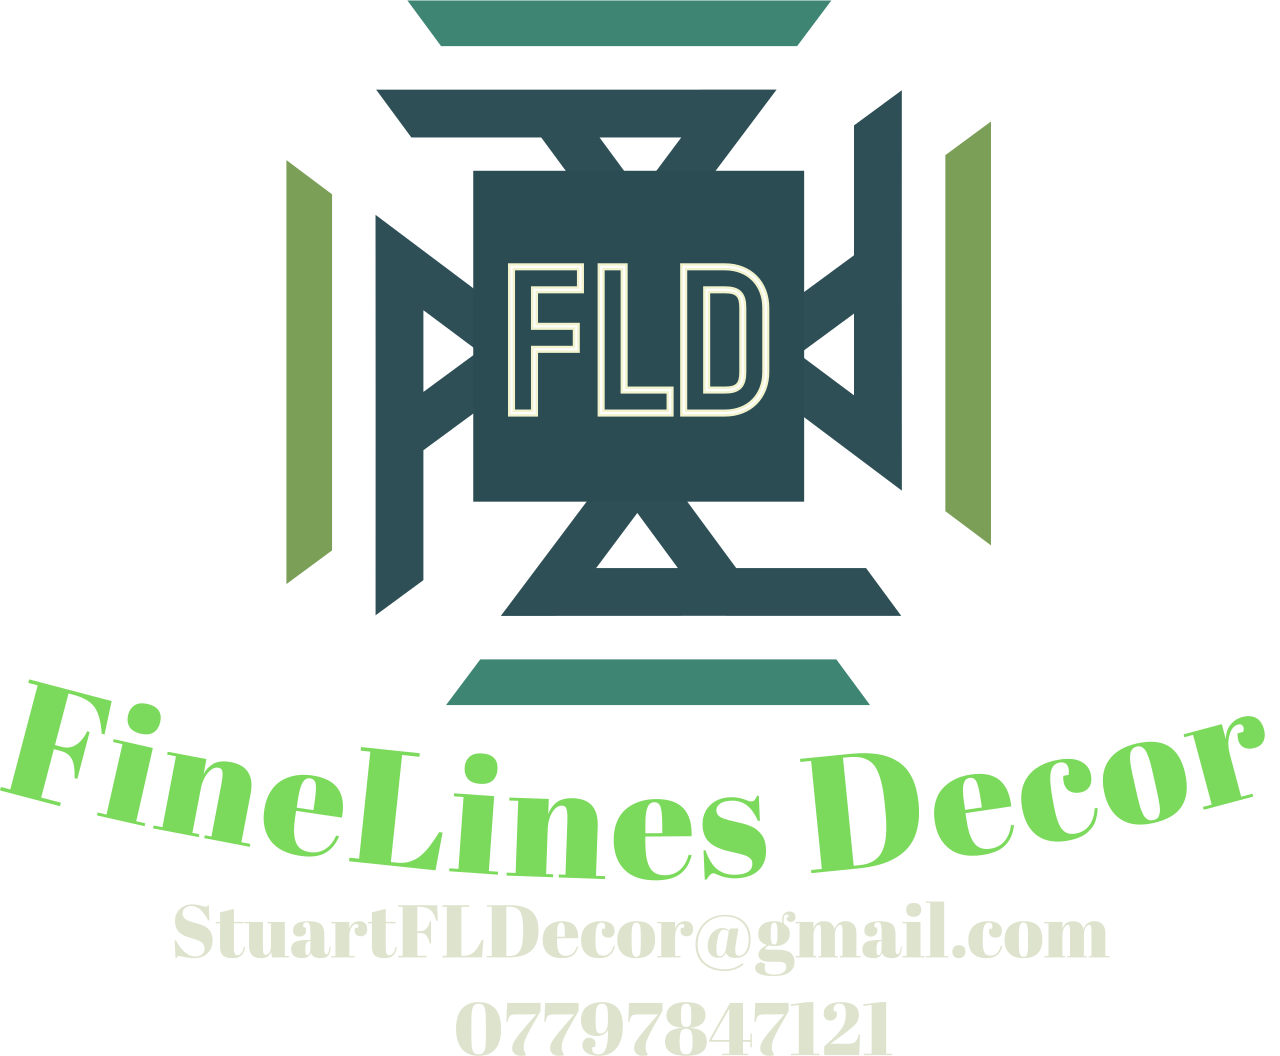 FineLines Decor's logo